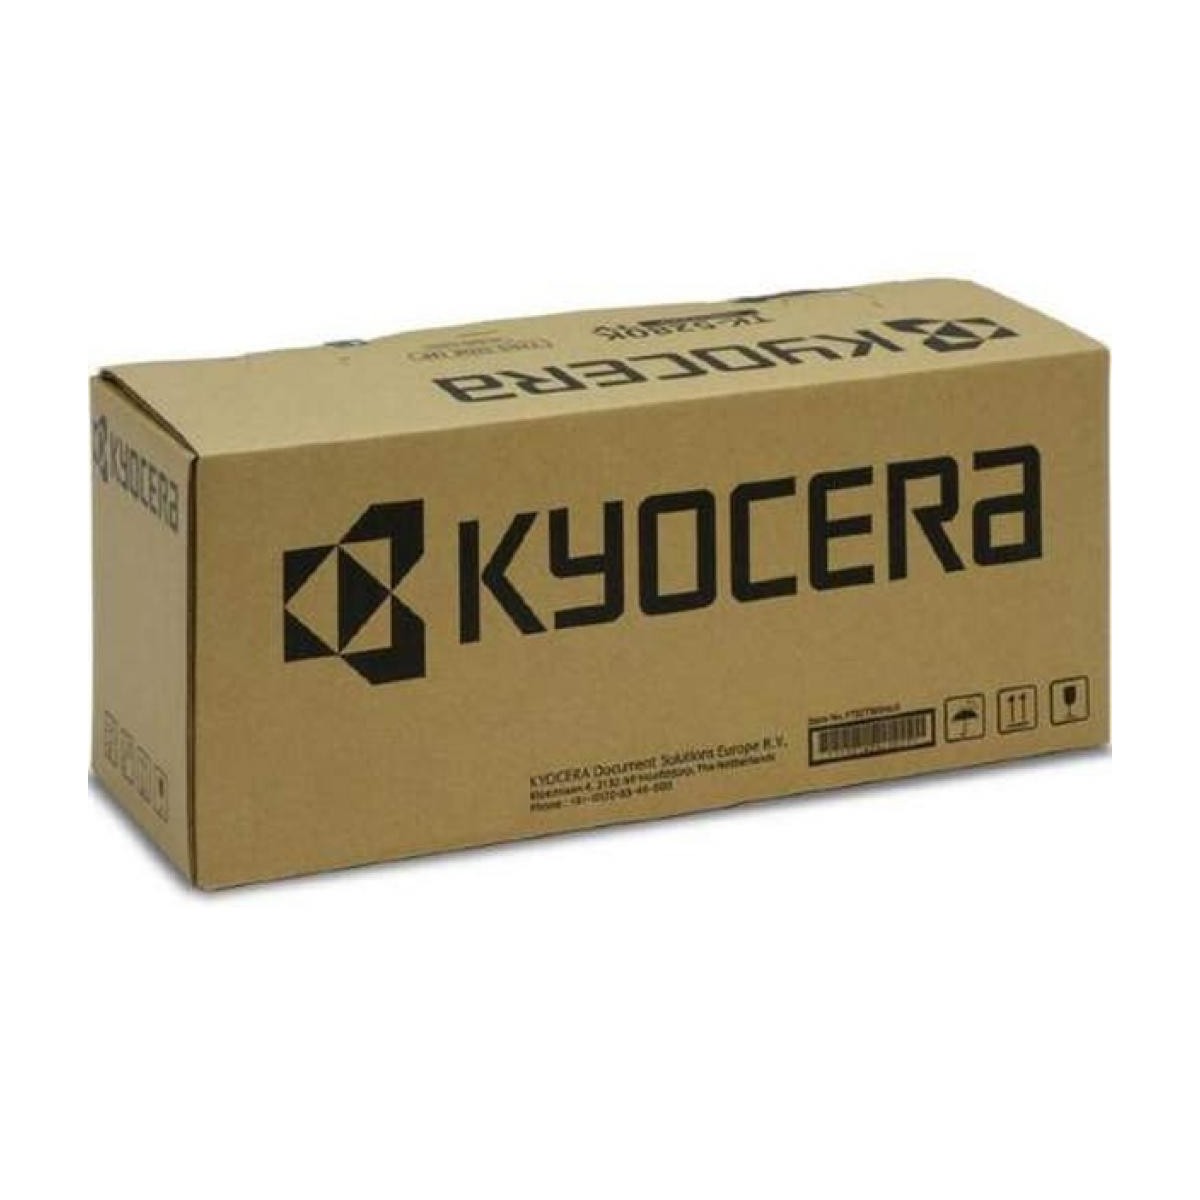 Kyocera Transfer Unit TR-8550 302ND9315